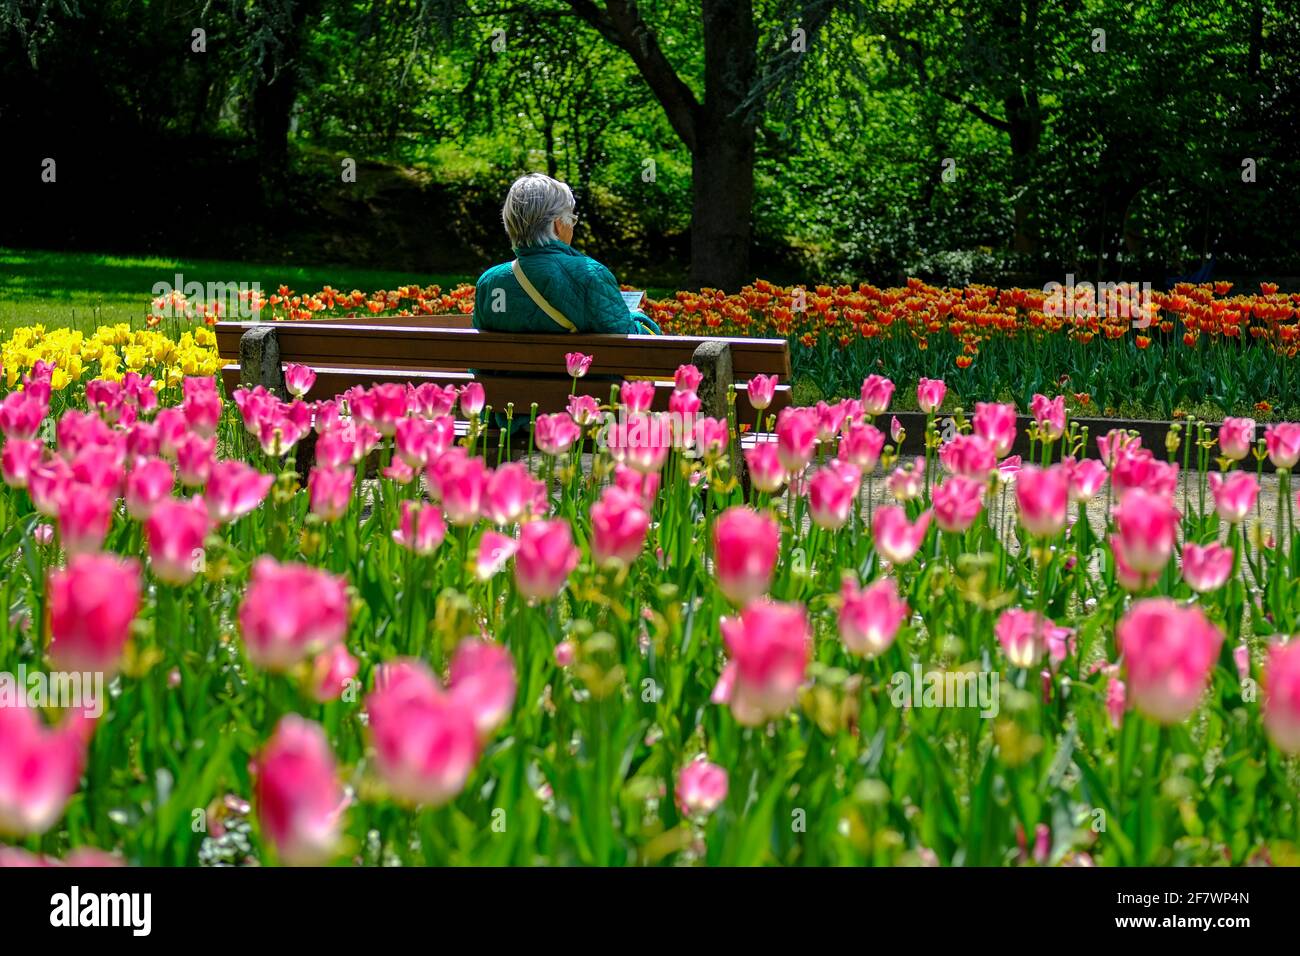 30.04.2020, Essen, Ruhrgebiet, Nordrhein-Westfalen, Deutschland - eine Frau sitzt allein auf einer Bank zwischen Tulpenbeeten im Gruga-Park in Essen u Stock Photo